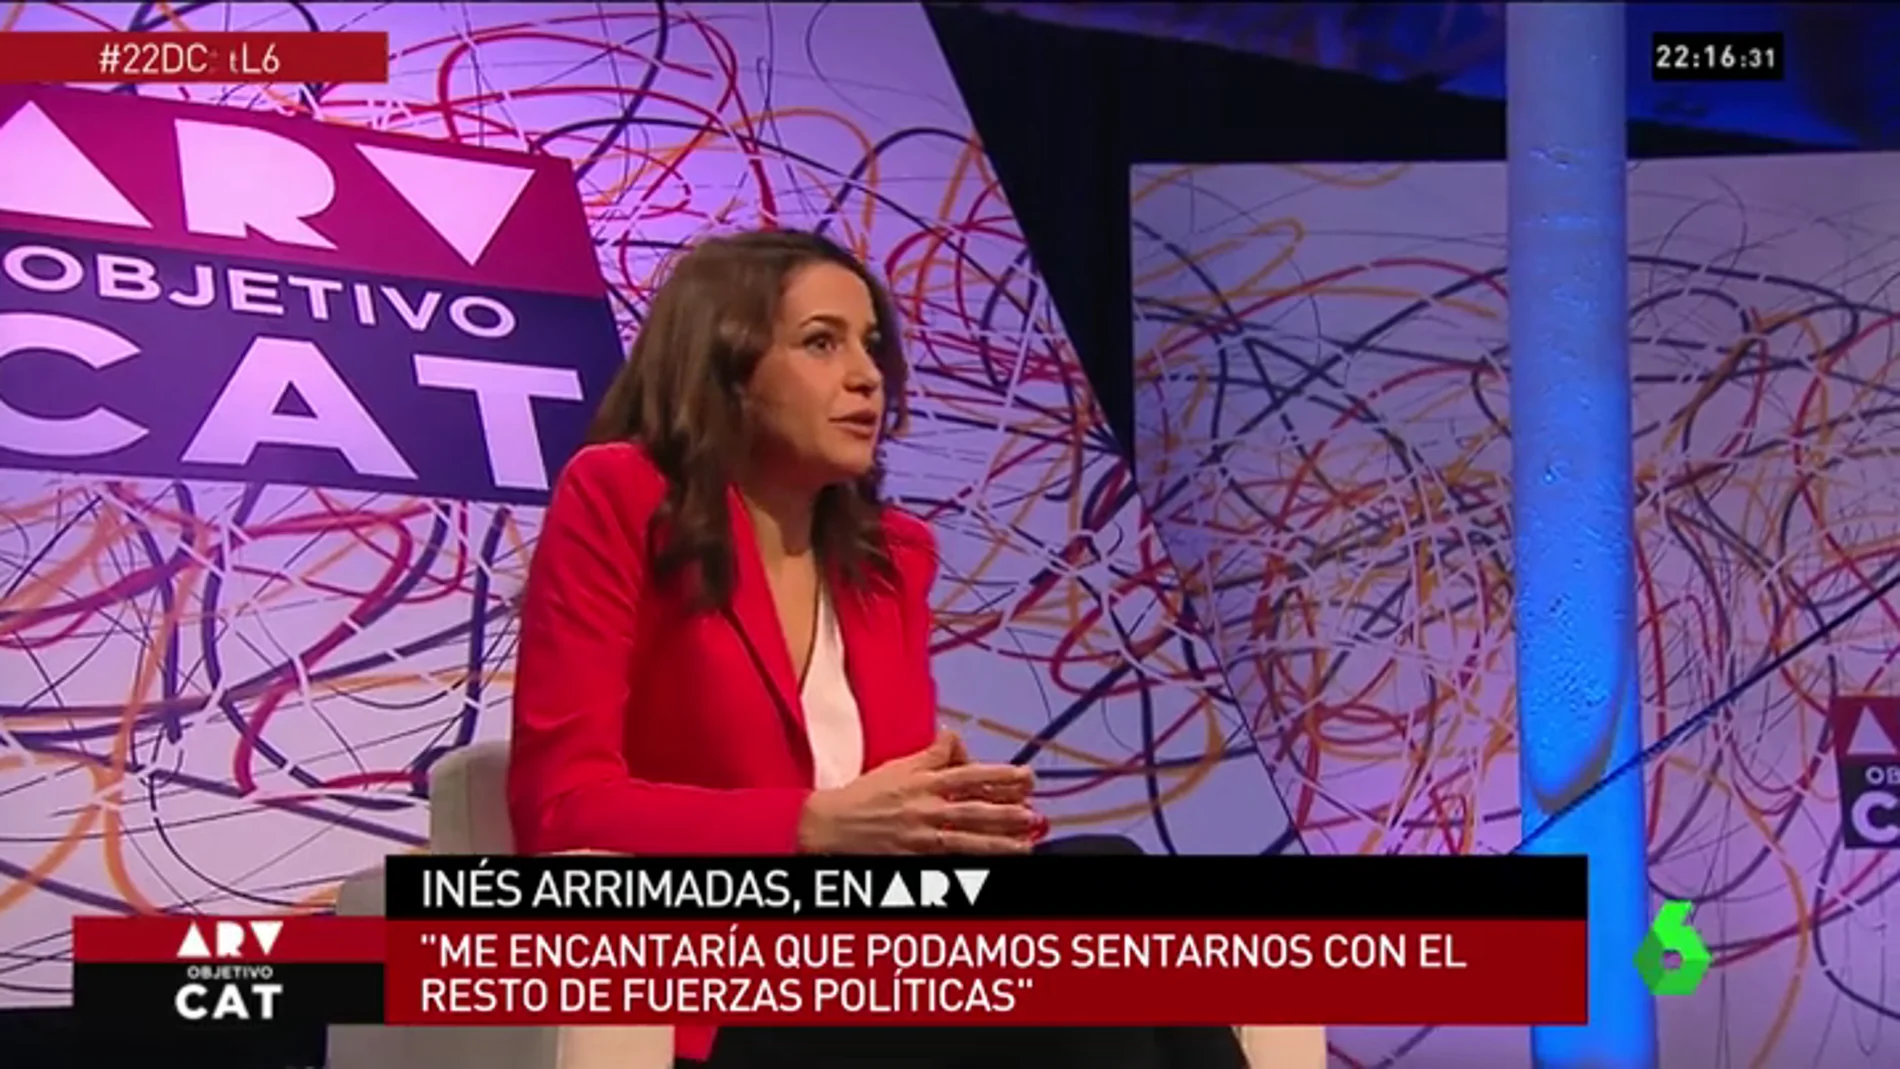 Inés Arrimadas: "El señor Puigdemont se ha saltado las leyes y ha huido, ¿pretende ser investido por plasma?"